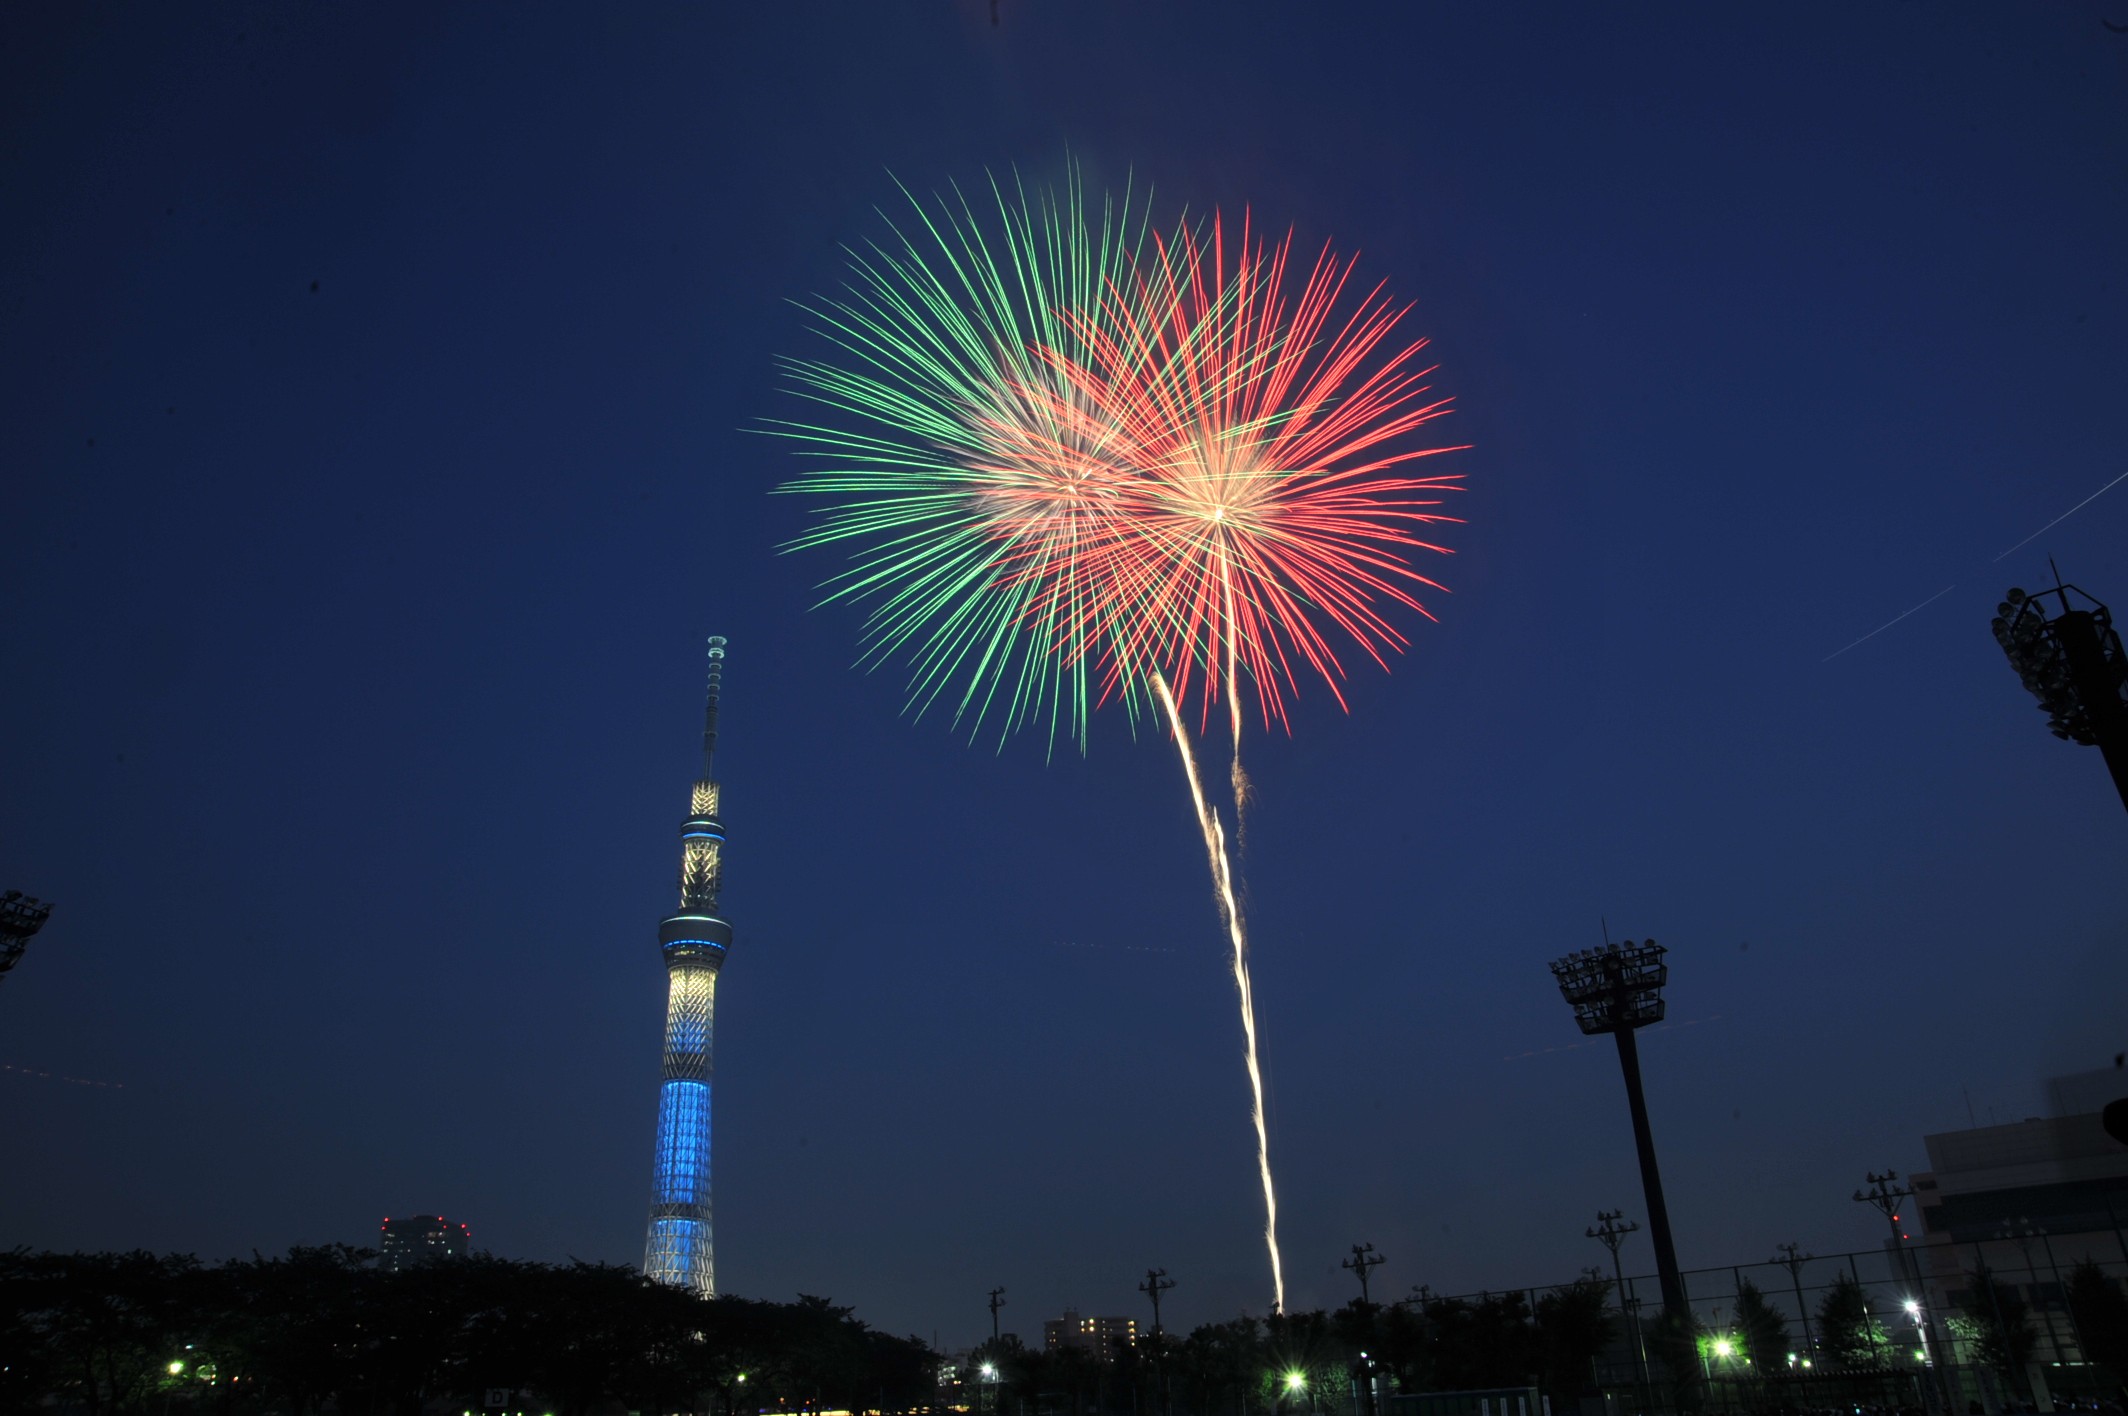 【มหานครโตเกียว】เทศกาลดอกไม้ไฟสุมิดะกาวะ: เทศกาลดอกไม้ไฟที่มีประวัติศาสตร์ยาวนานที่สุดในญี่ปุ่น